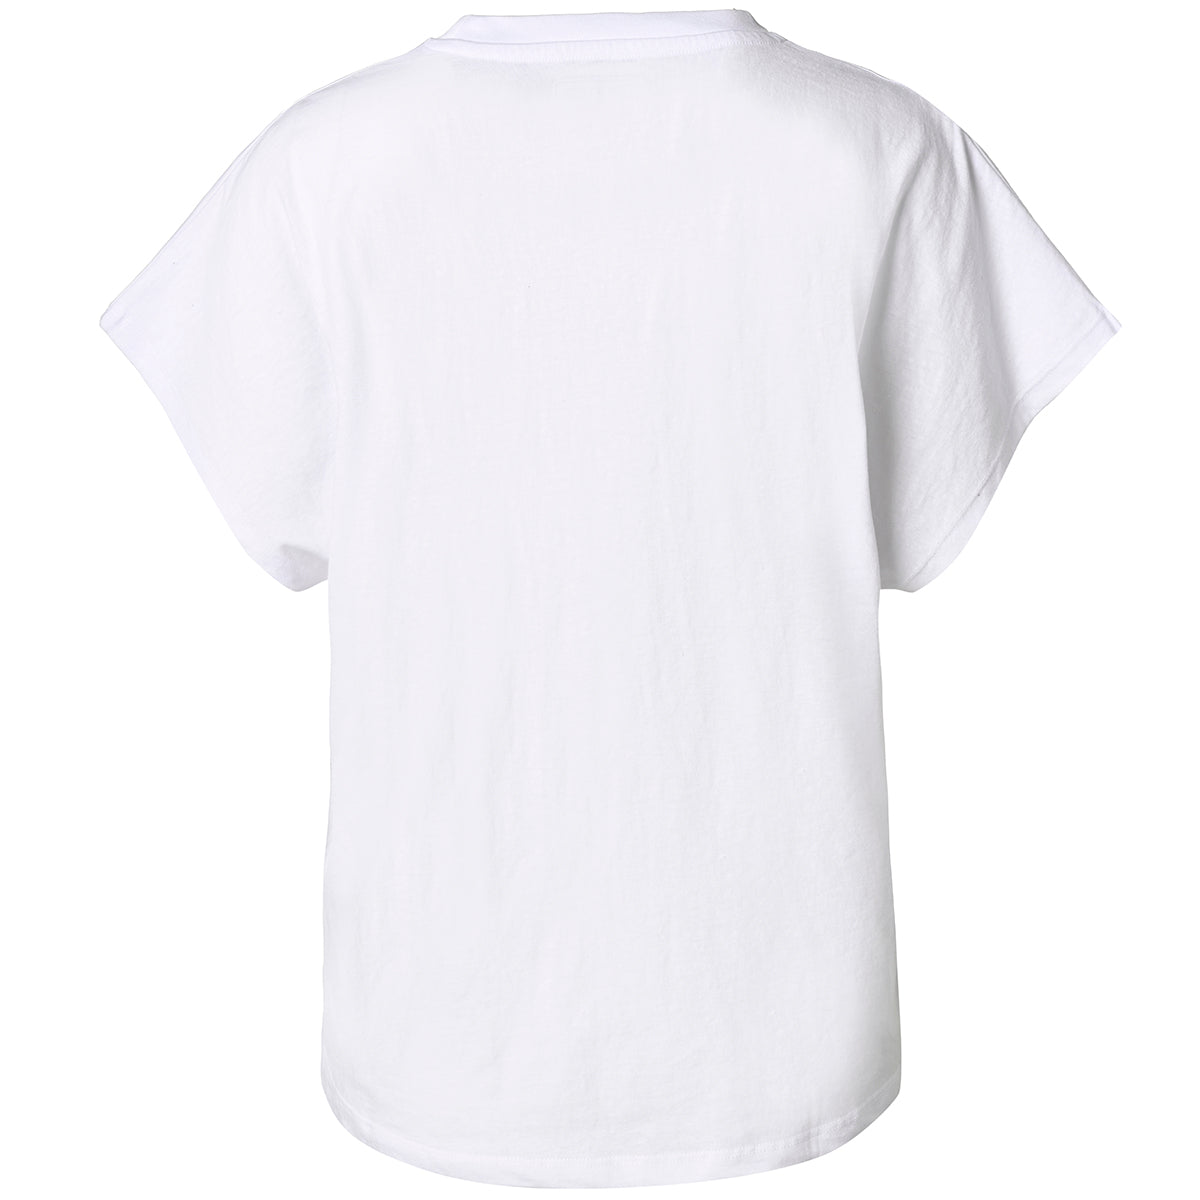 T-shirt Duva Blanc Femme - Image 2